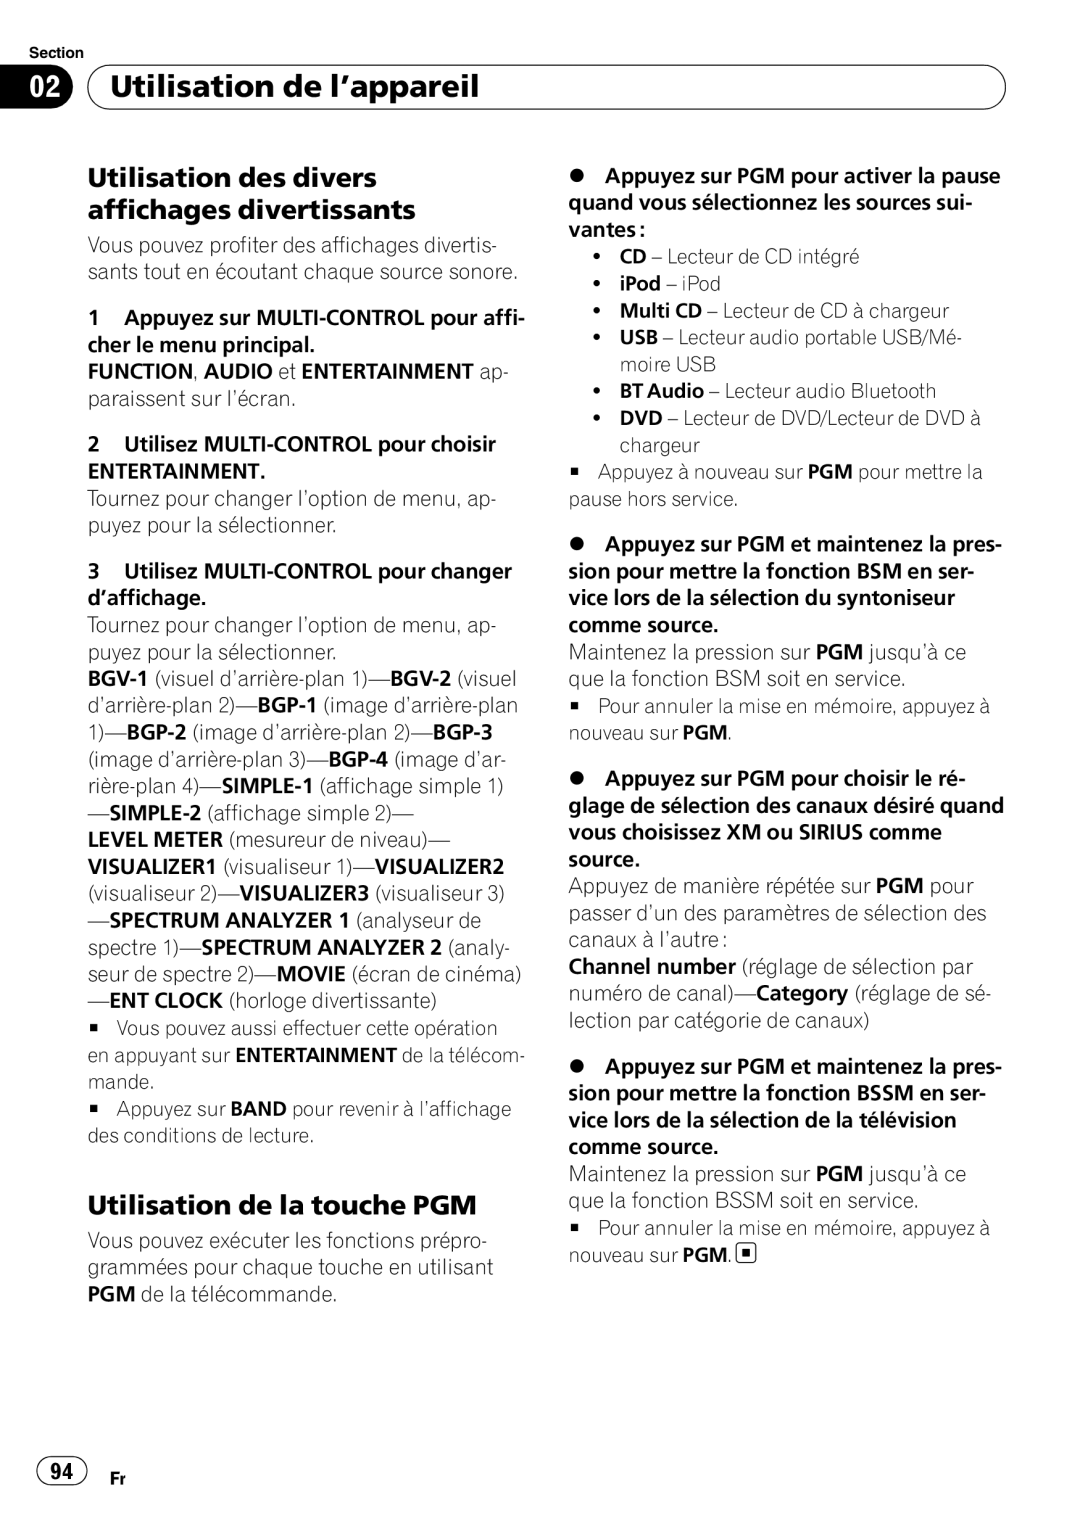 Pioneer DEH-P5900IB operation manual Utilisation des divers affichages divertissants, Utilisation de la touche PGM 